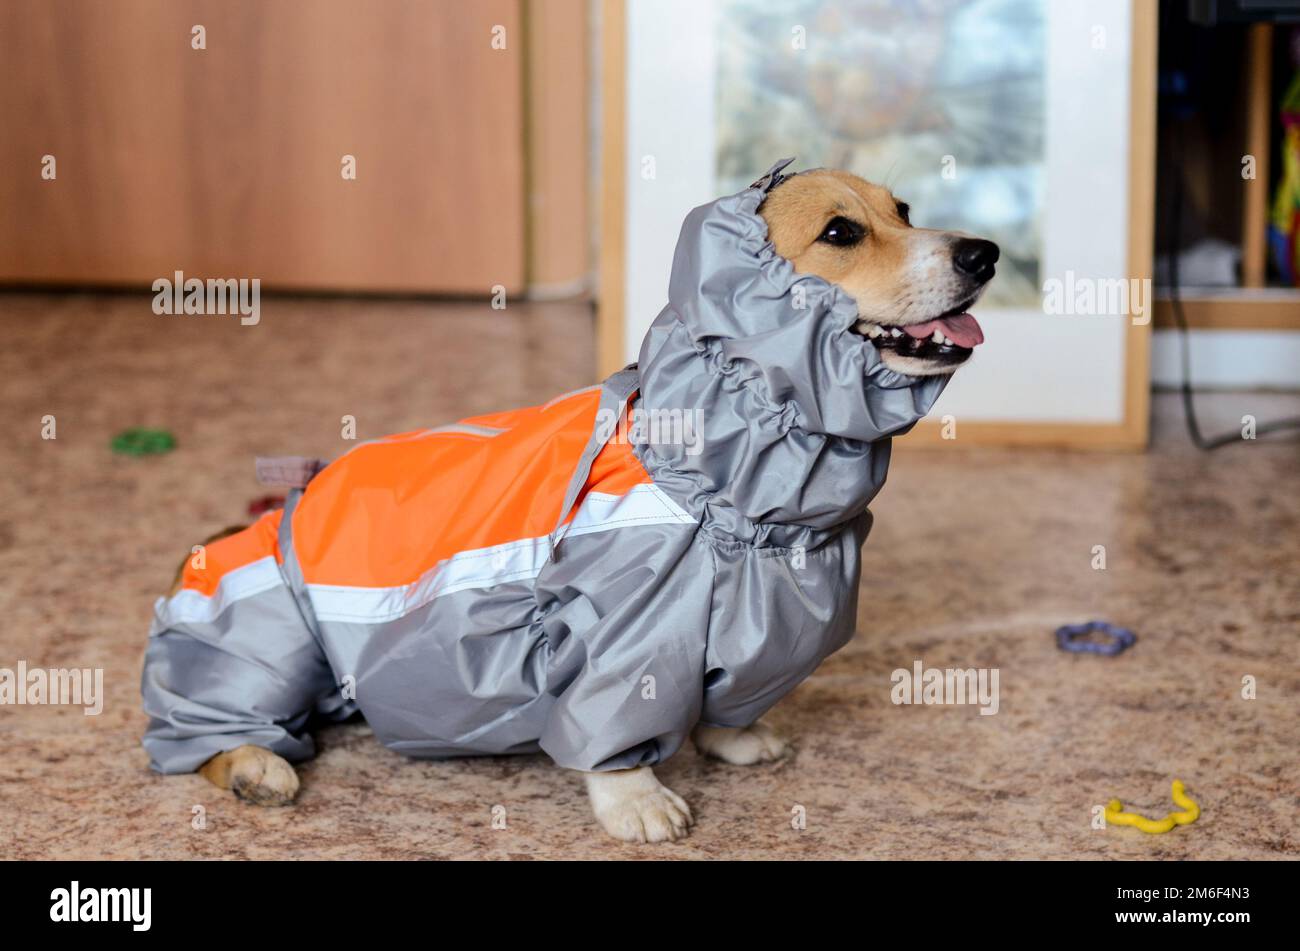 Hund in seinen Klamotten. Eine Jacke für einen Hund. Passende Kleidung  Stockfotografie - Alamy